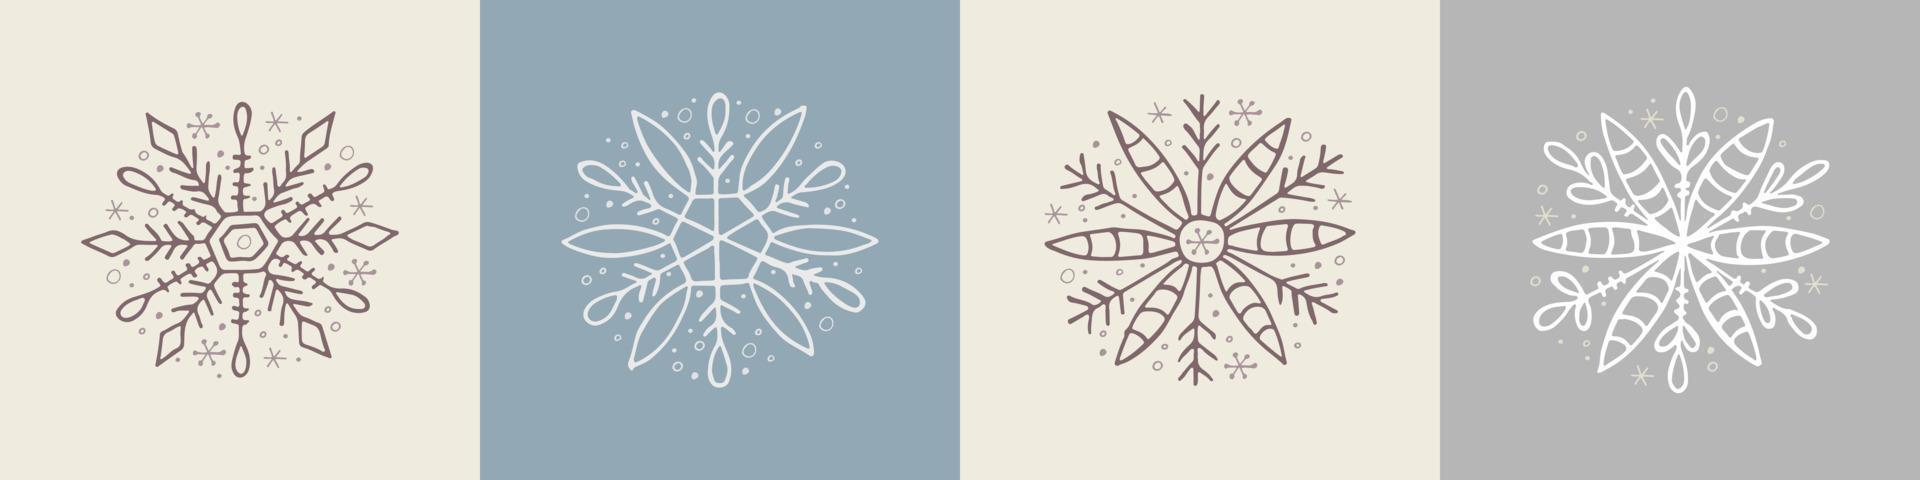 un conjunto de copos de nieve dibujados a mano. ilustración vectorial en estilo garabato. estado de ánimo de invierno. hola 2023. feliz navidad y próspero año nuevo. elementos blancos y grises sobre un fondo gris. vector